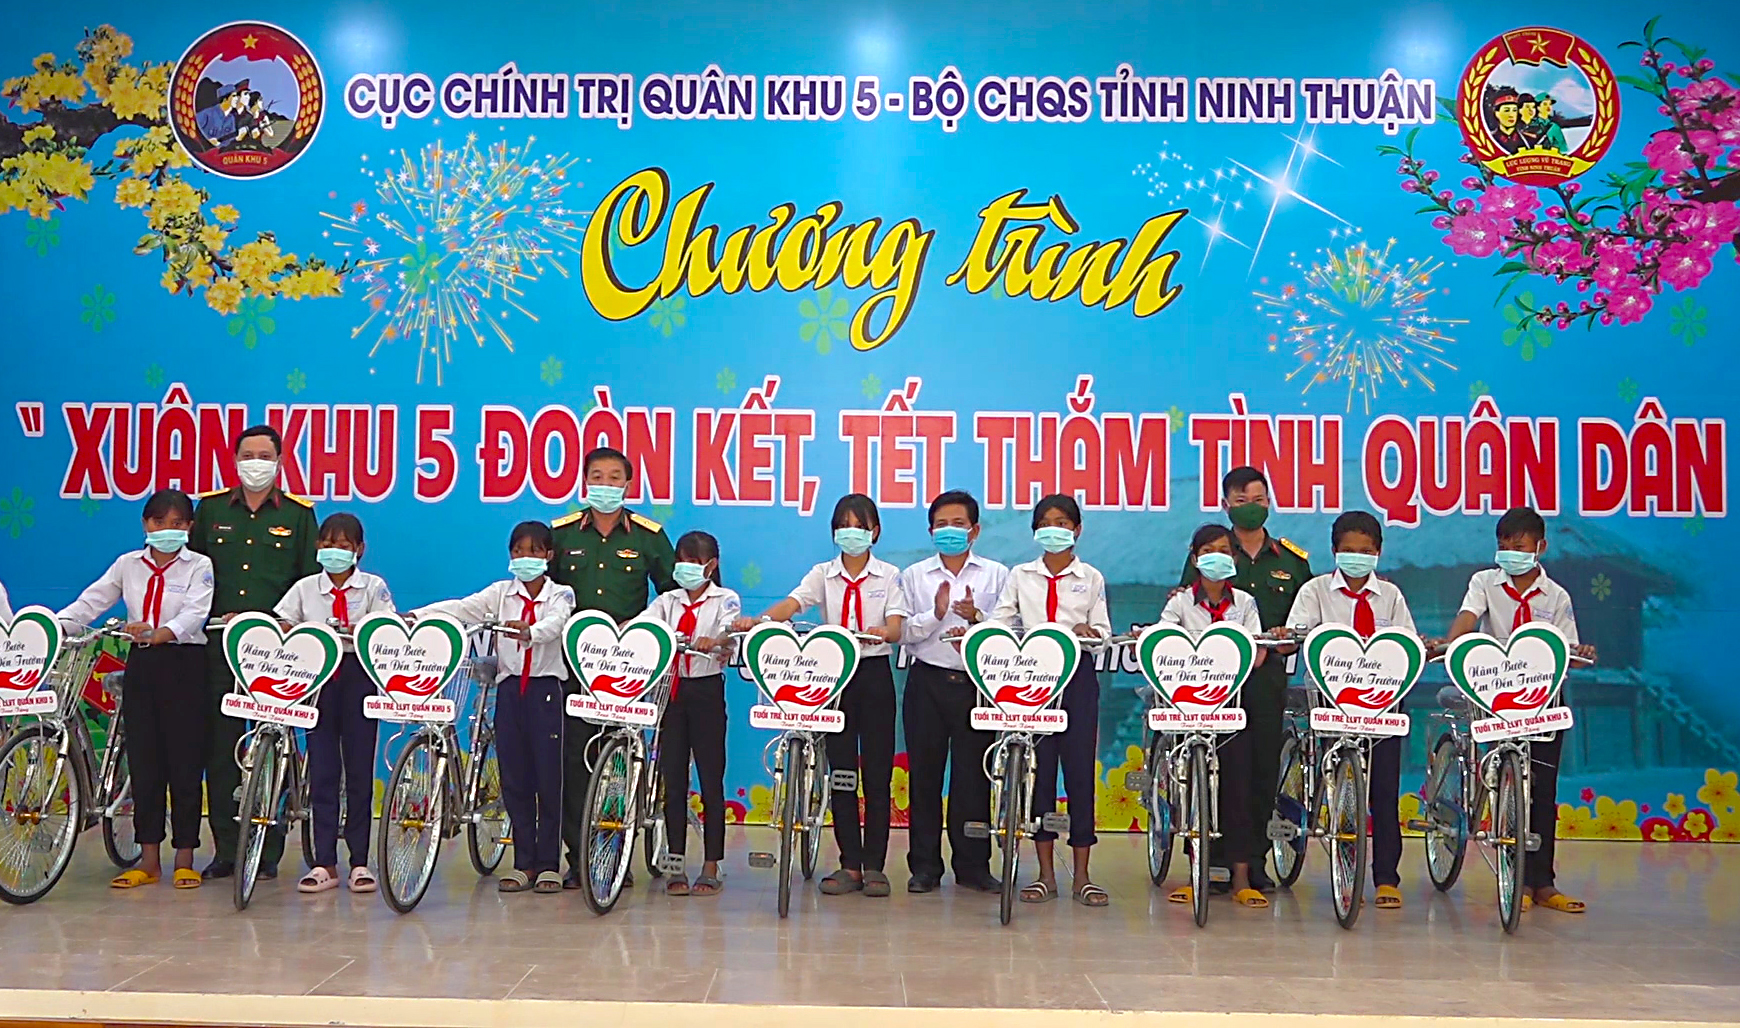 Đại diện tuổi trẻ Quân khu 5 tặng xe đạp cho các cháu học sinh nghèo tỉnh Ninh Thuận